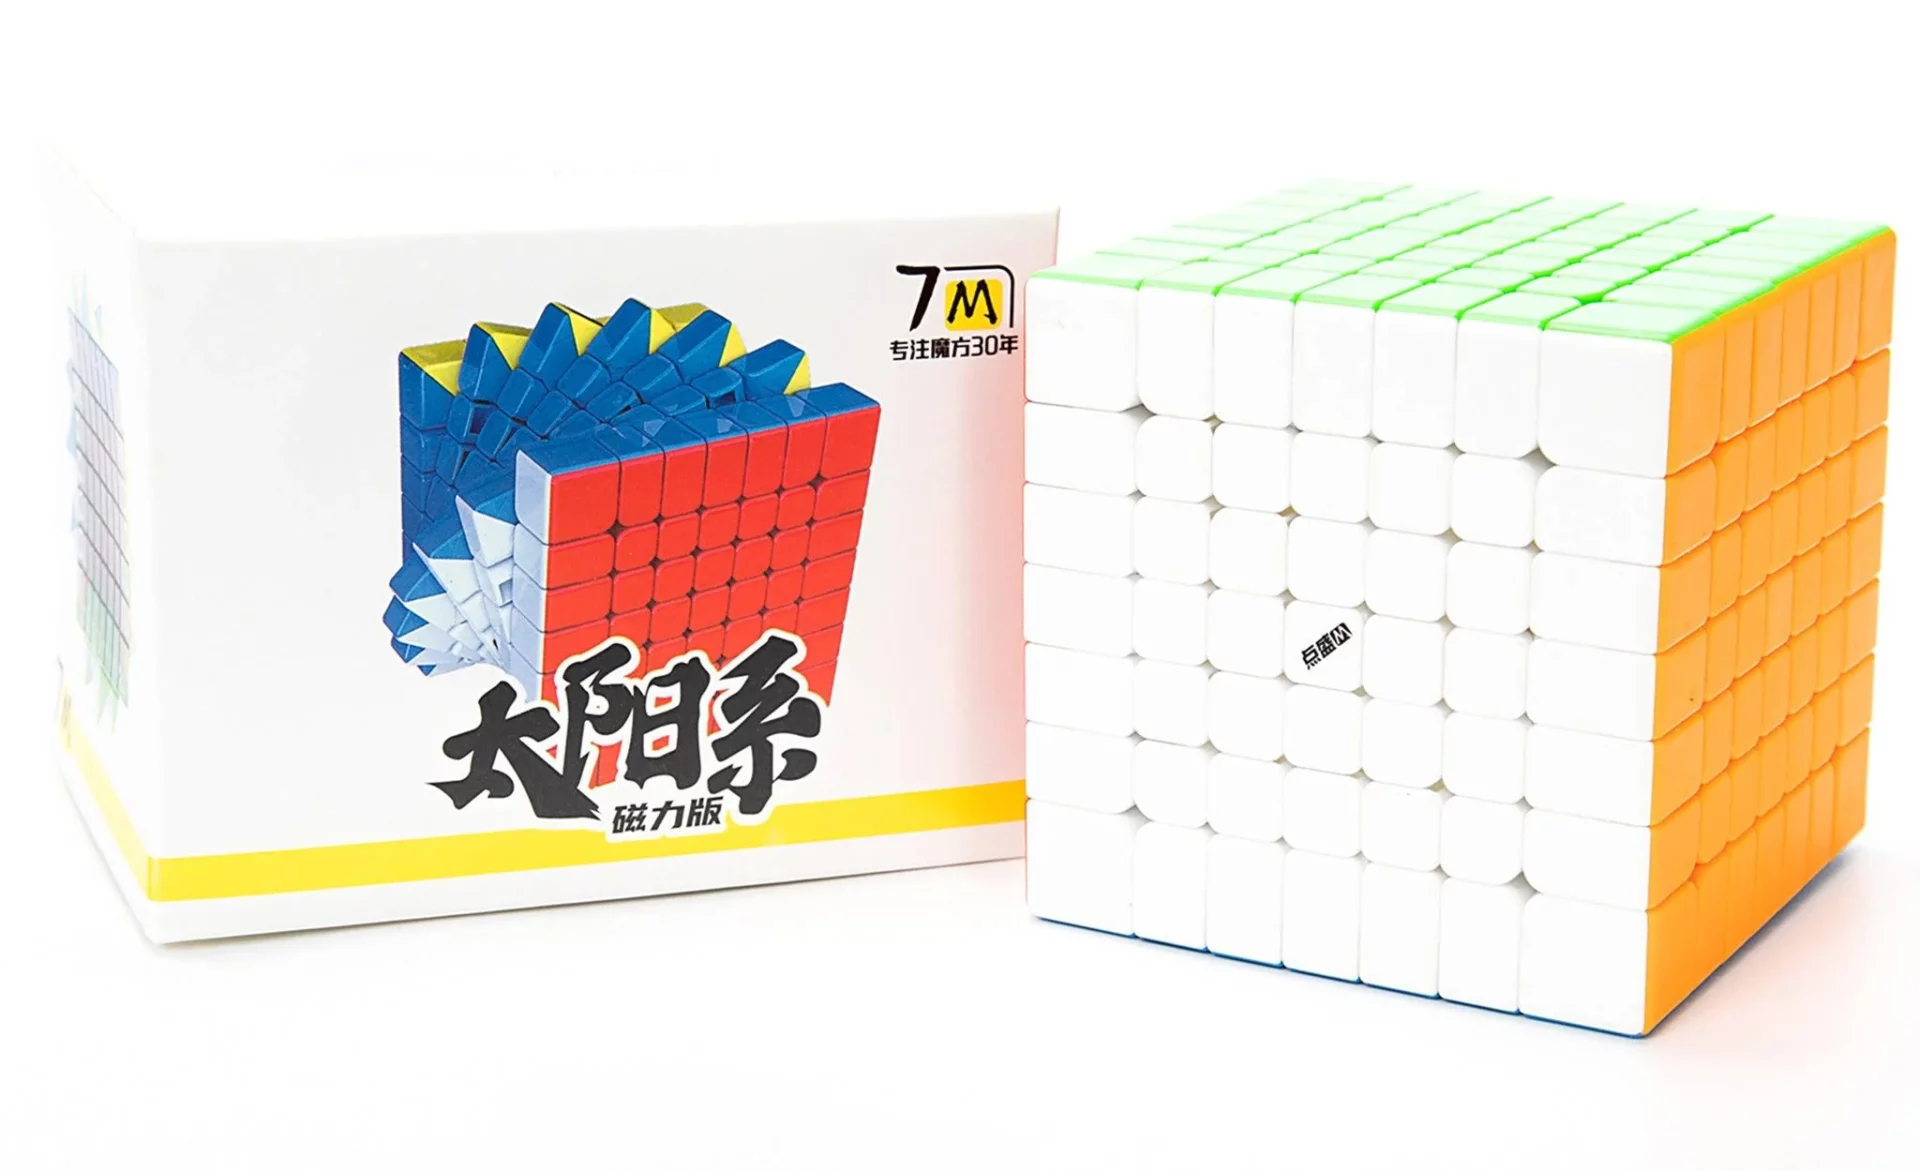 7x7 Cube